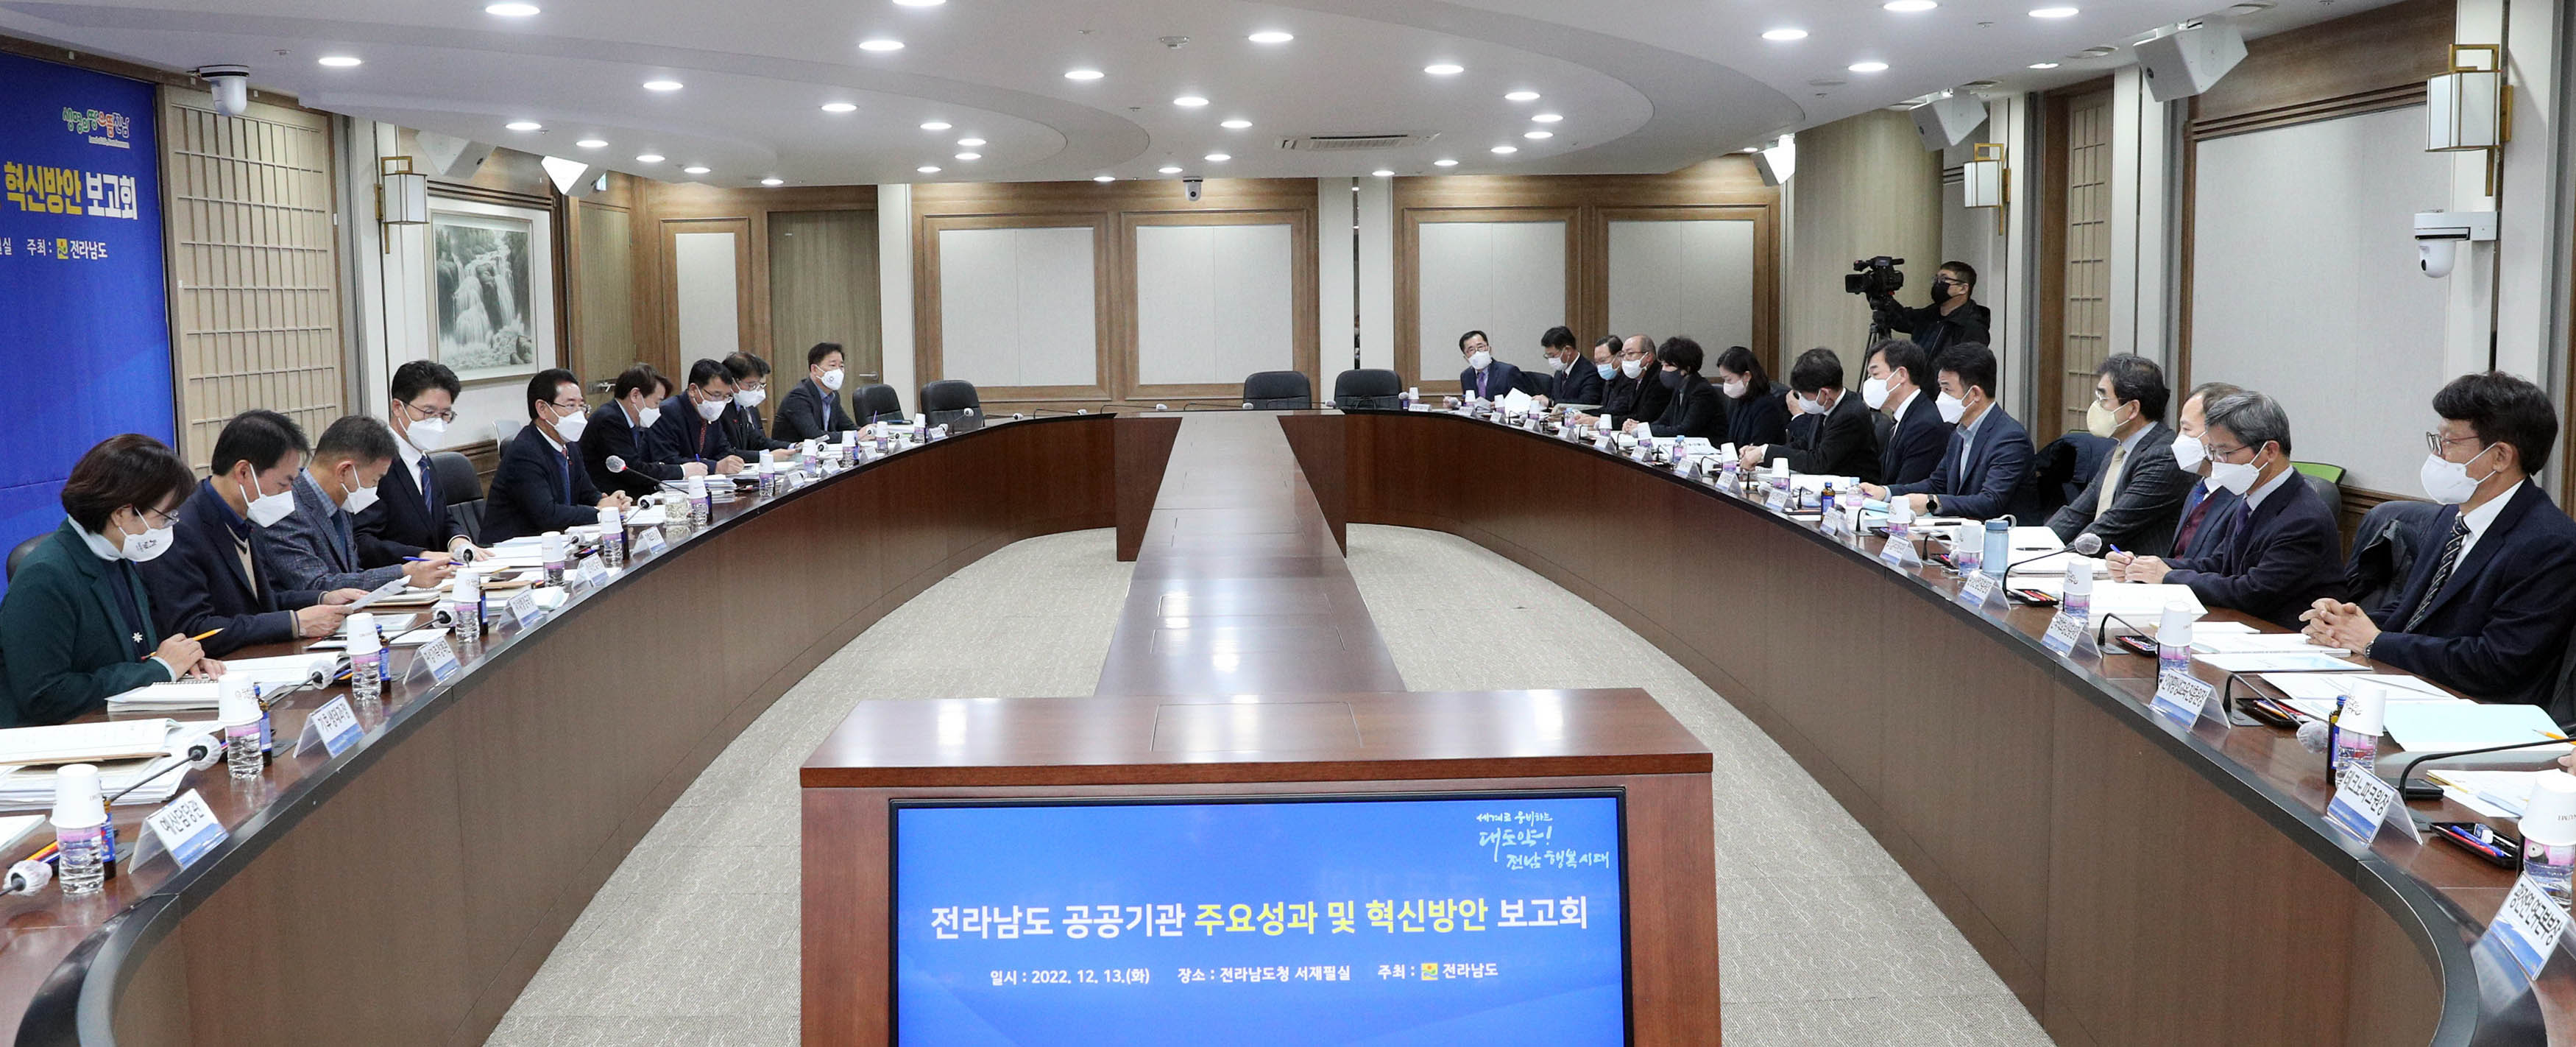 전라남도 공공기관 주요성과 및 혁신방안 보고회5